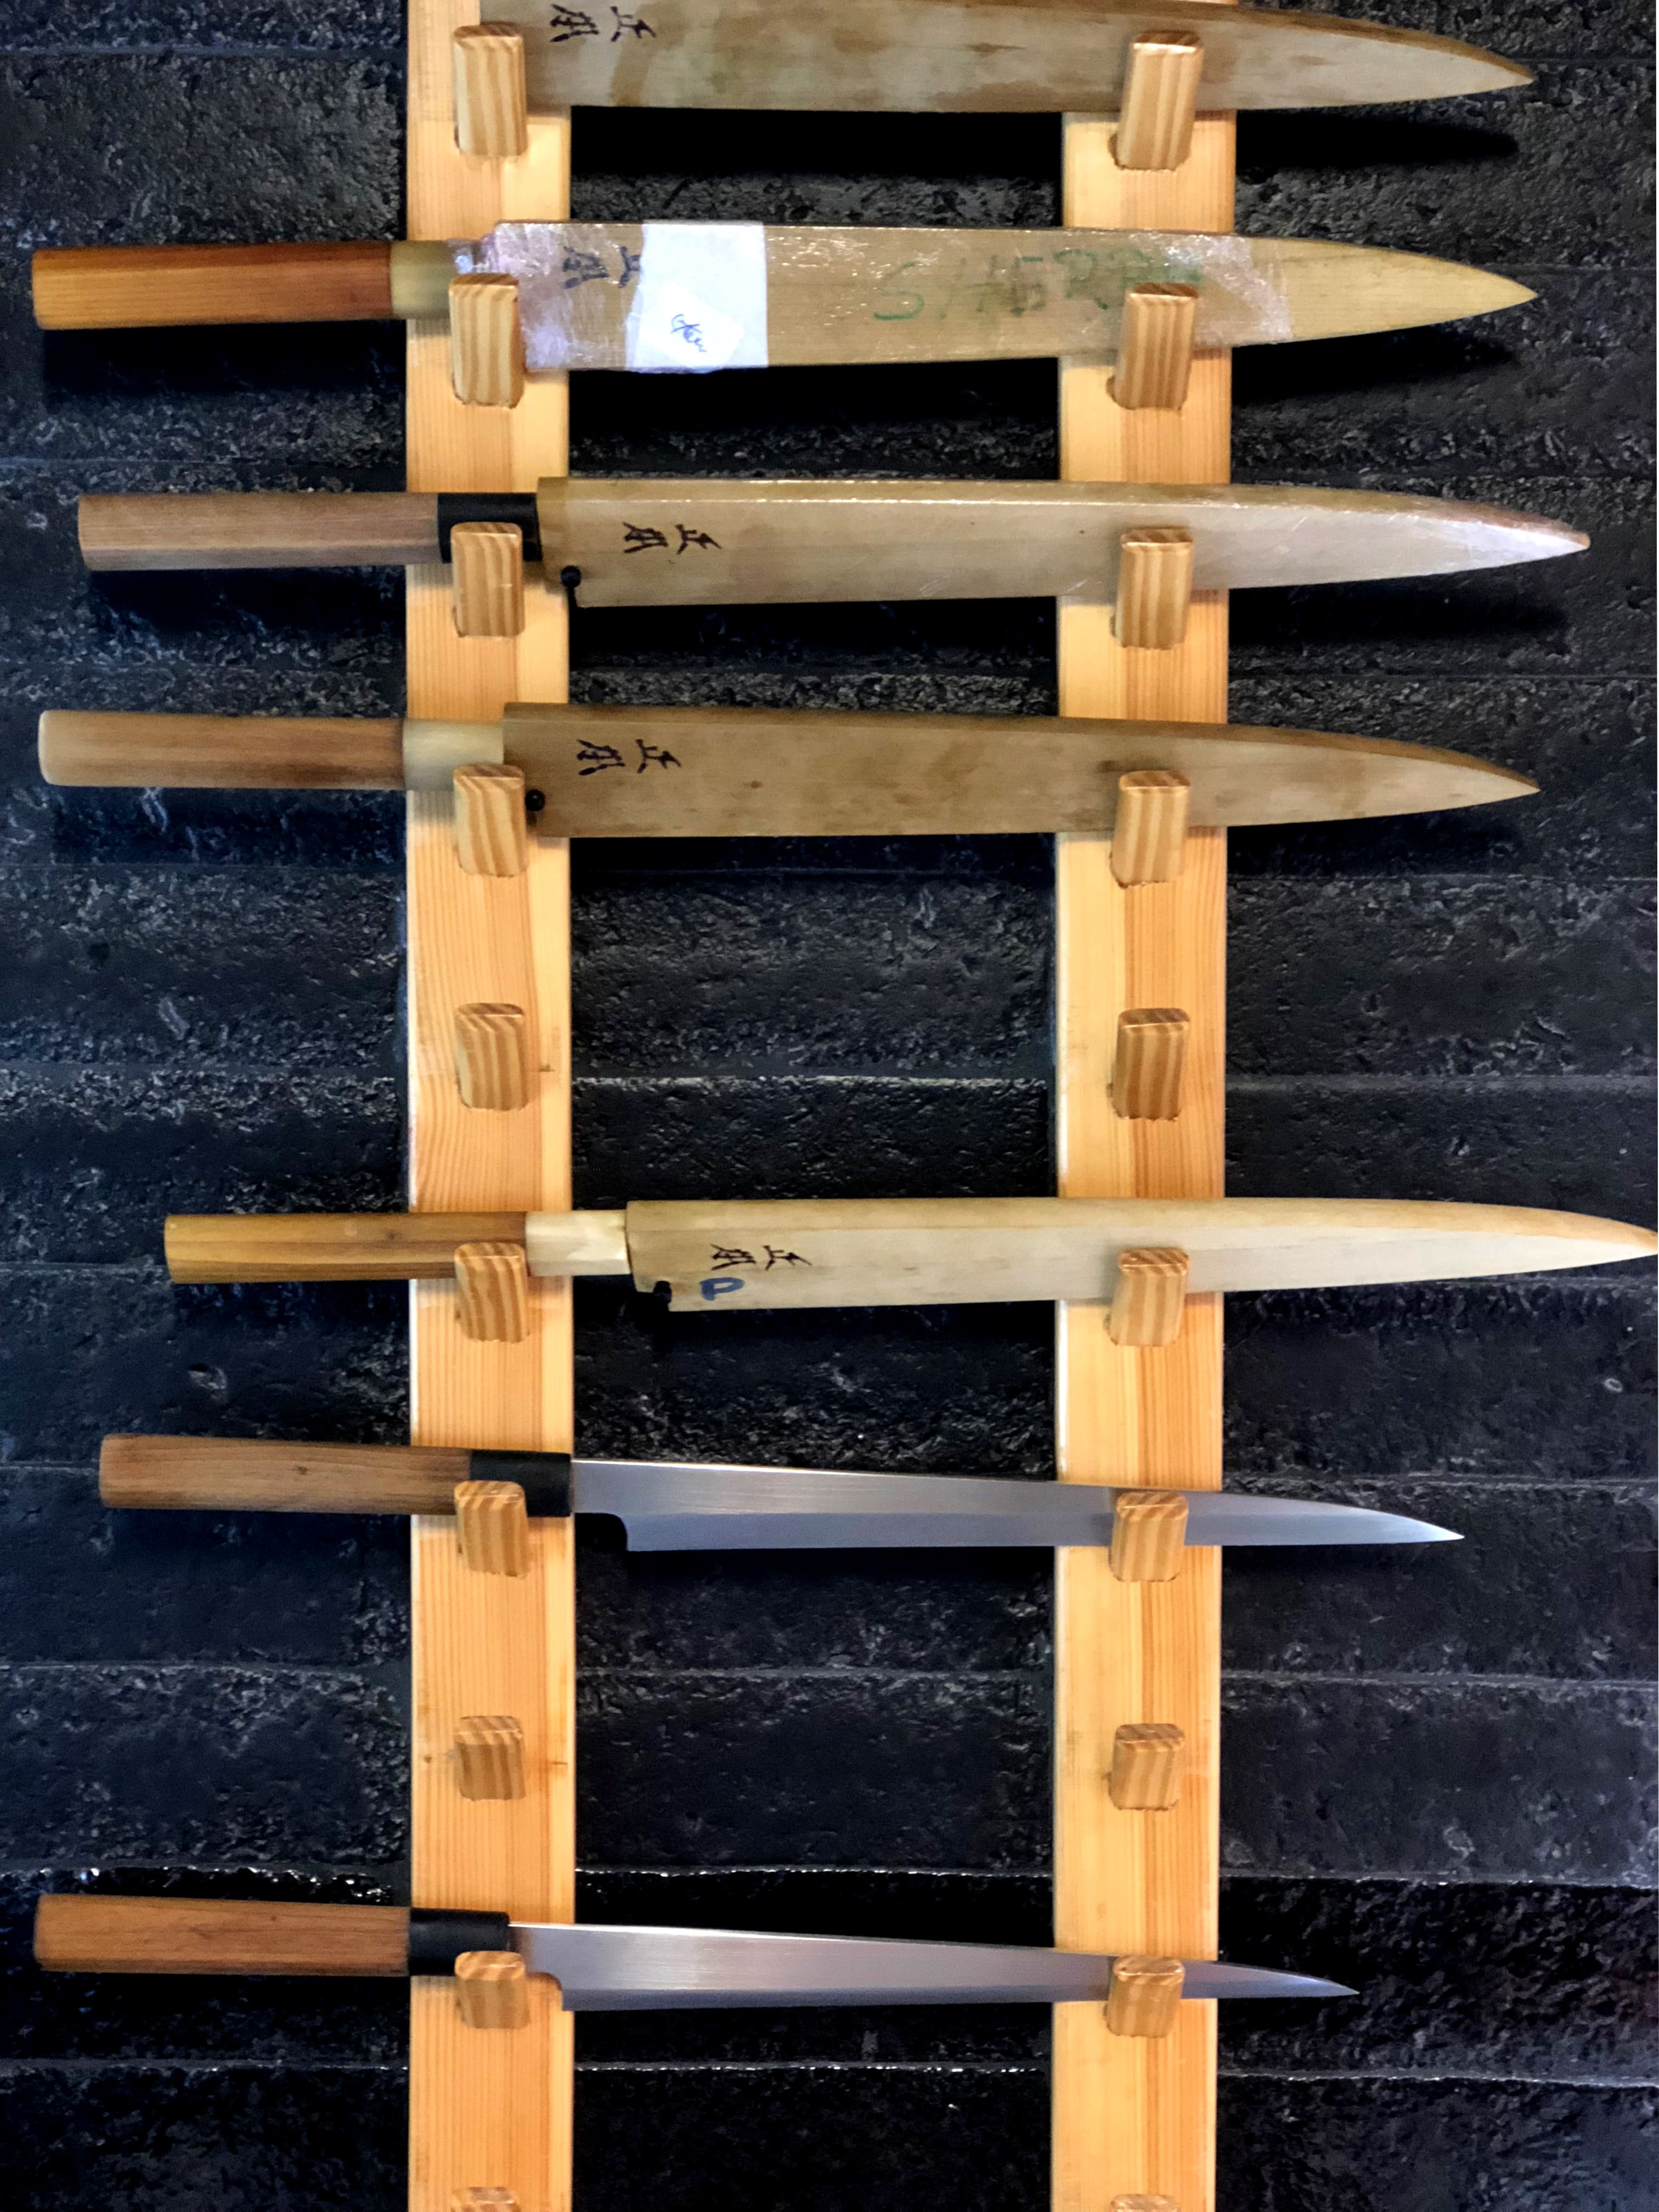 Por qué los cuchillos para cocineros japoneses son tan caros, Qué caro